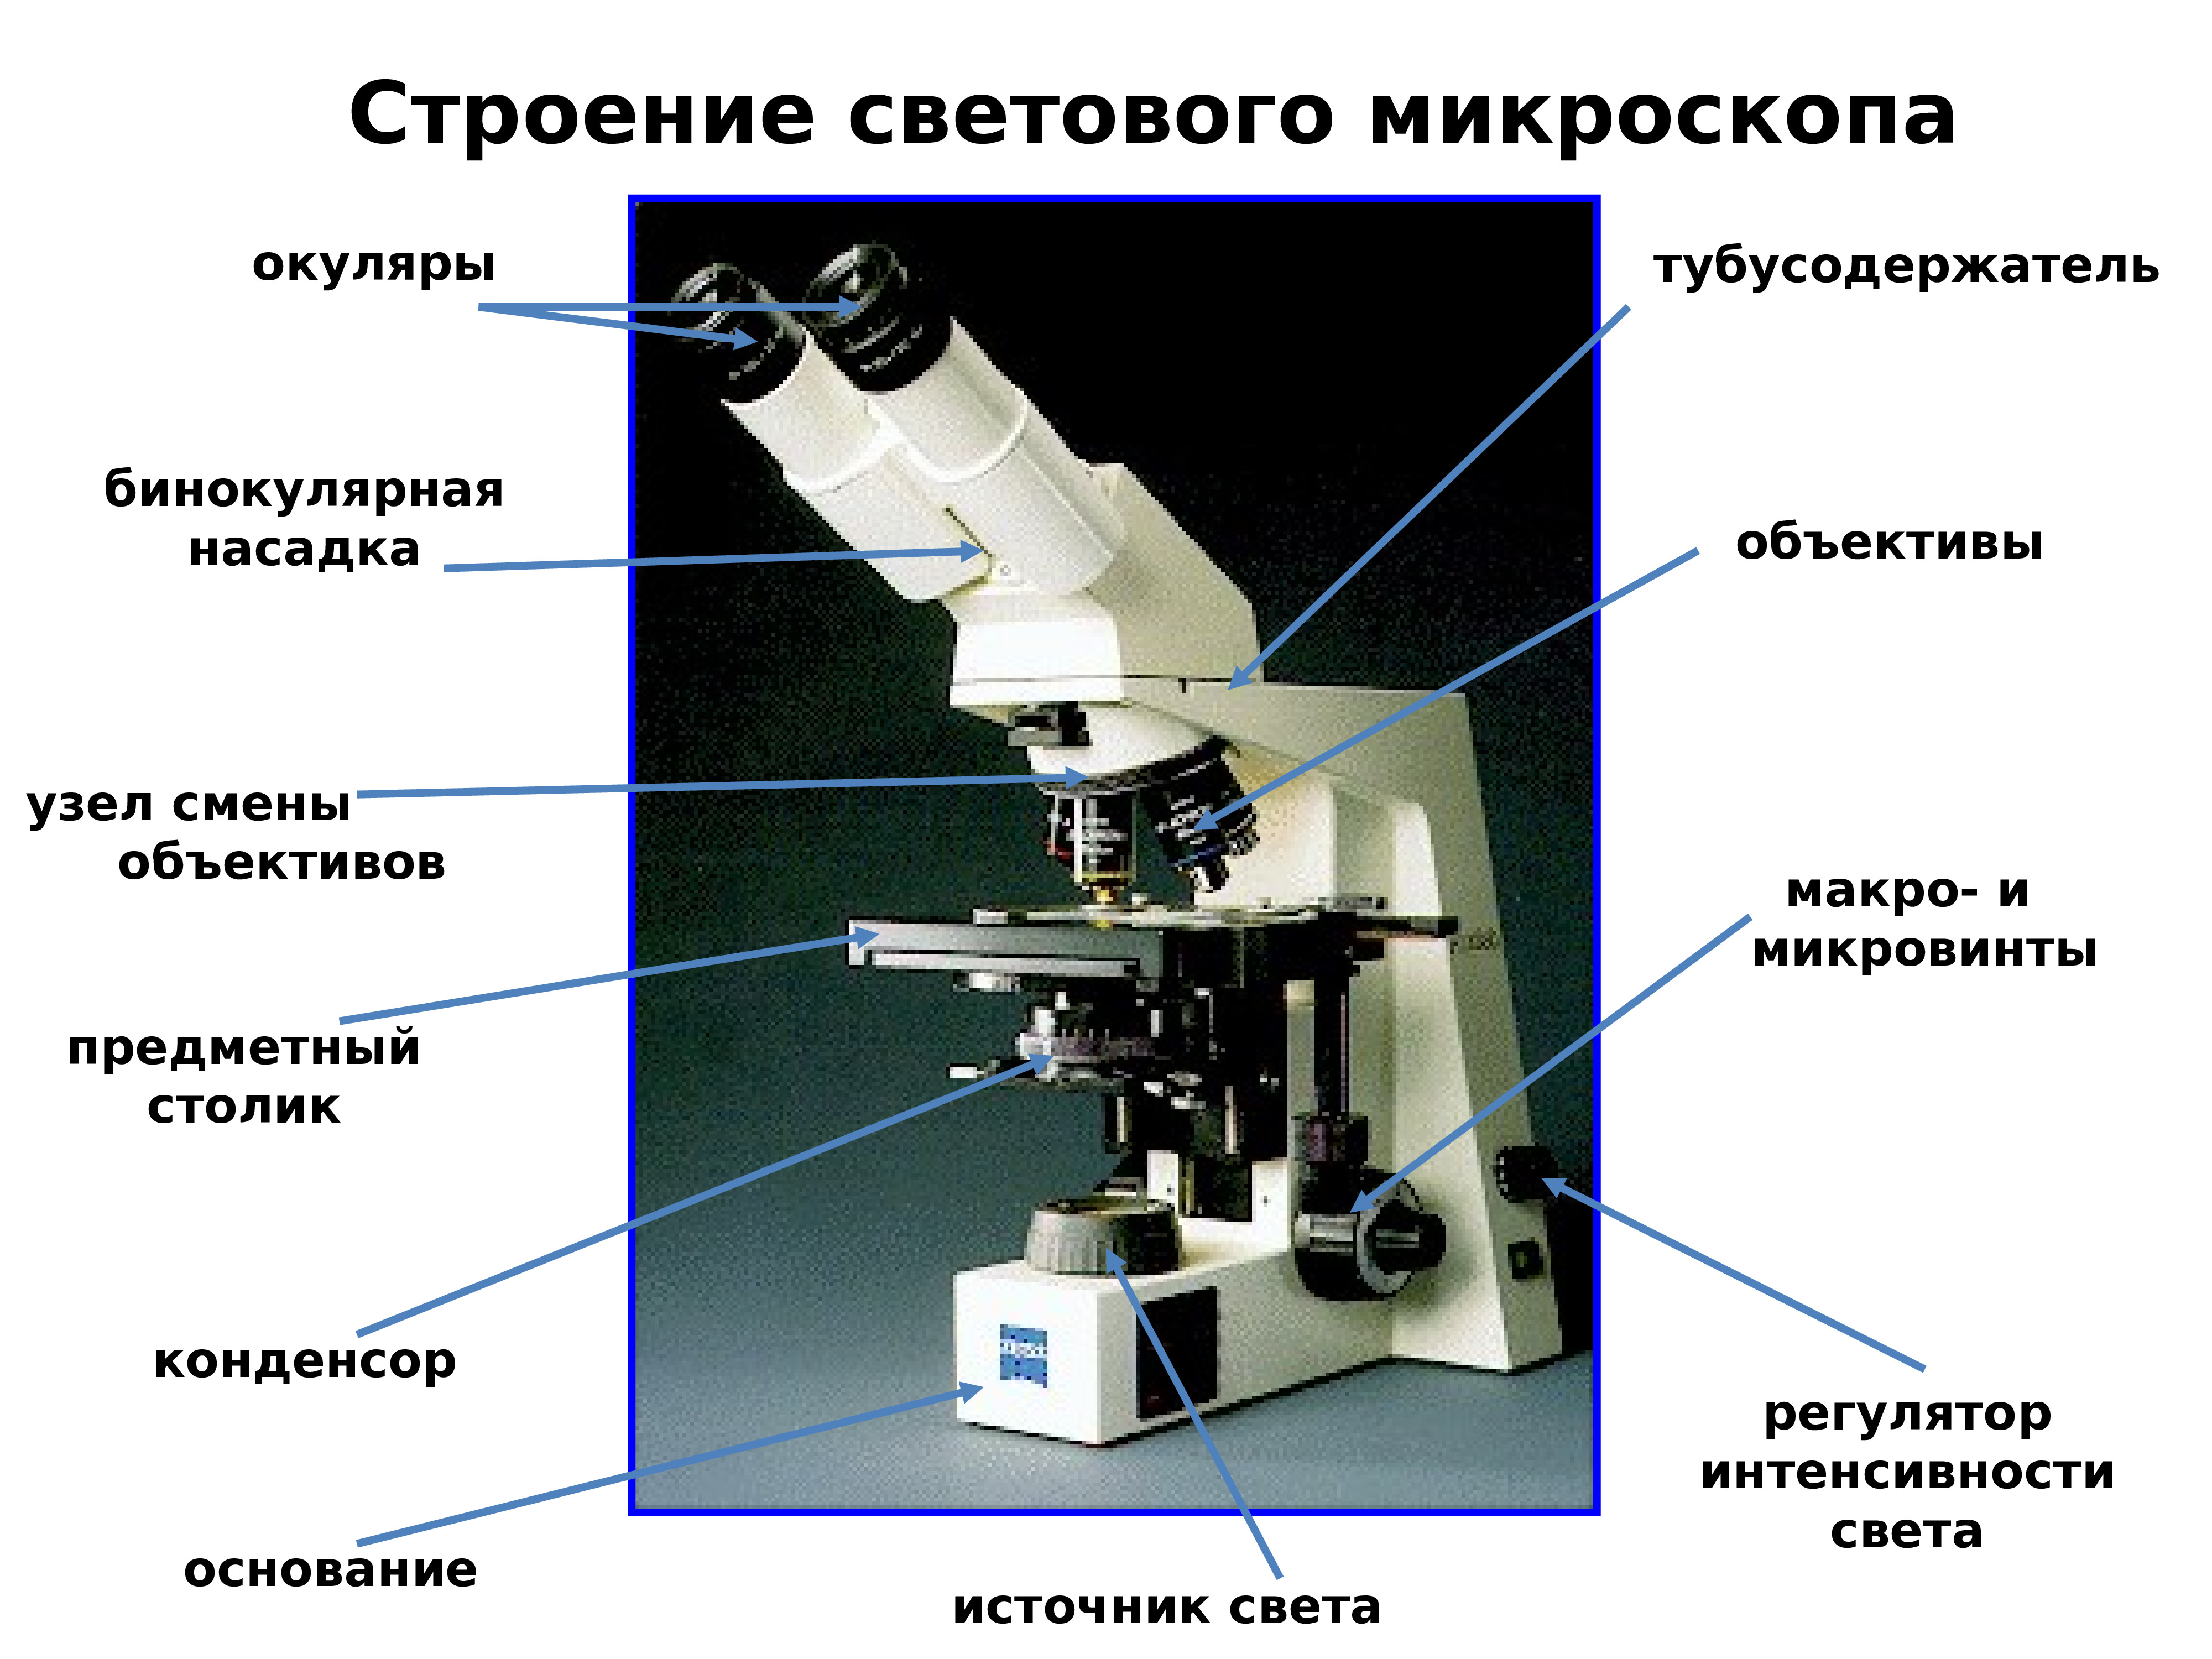 1 прибор типа микроскопа. Световой микроскоп строение конденсор. Строение микроскопа тубусодержатель. Строение светового микроскопа гистология. Строение микроскопа оптического микроскопа.